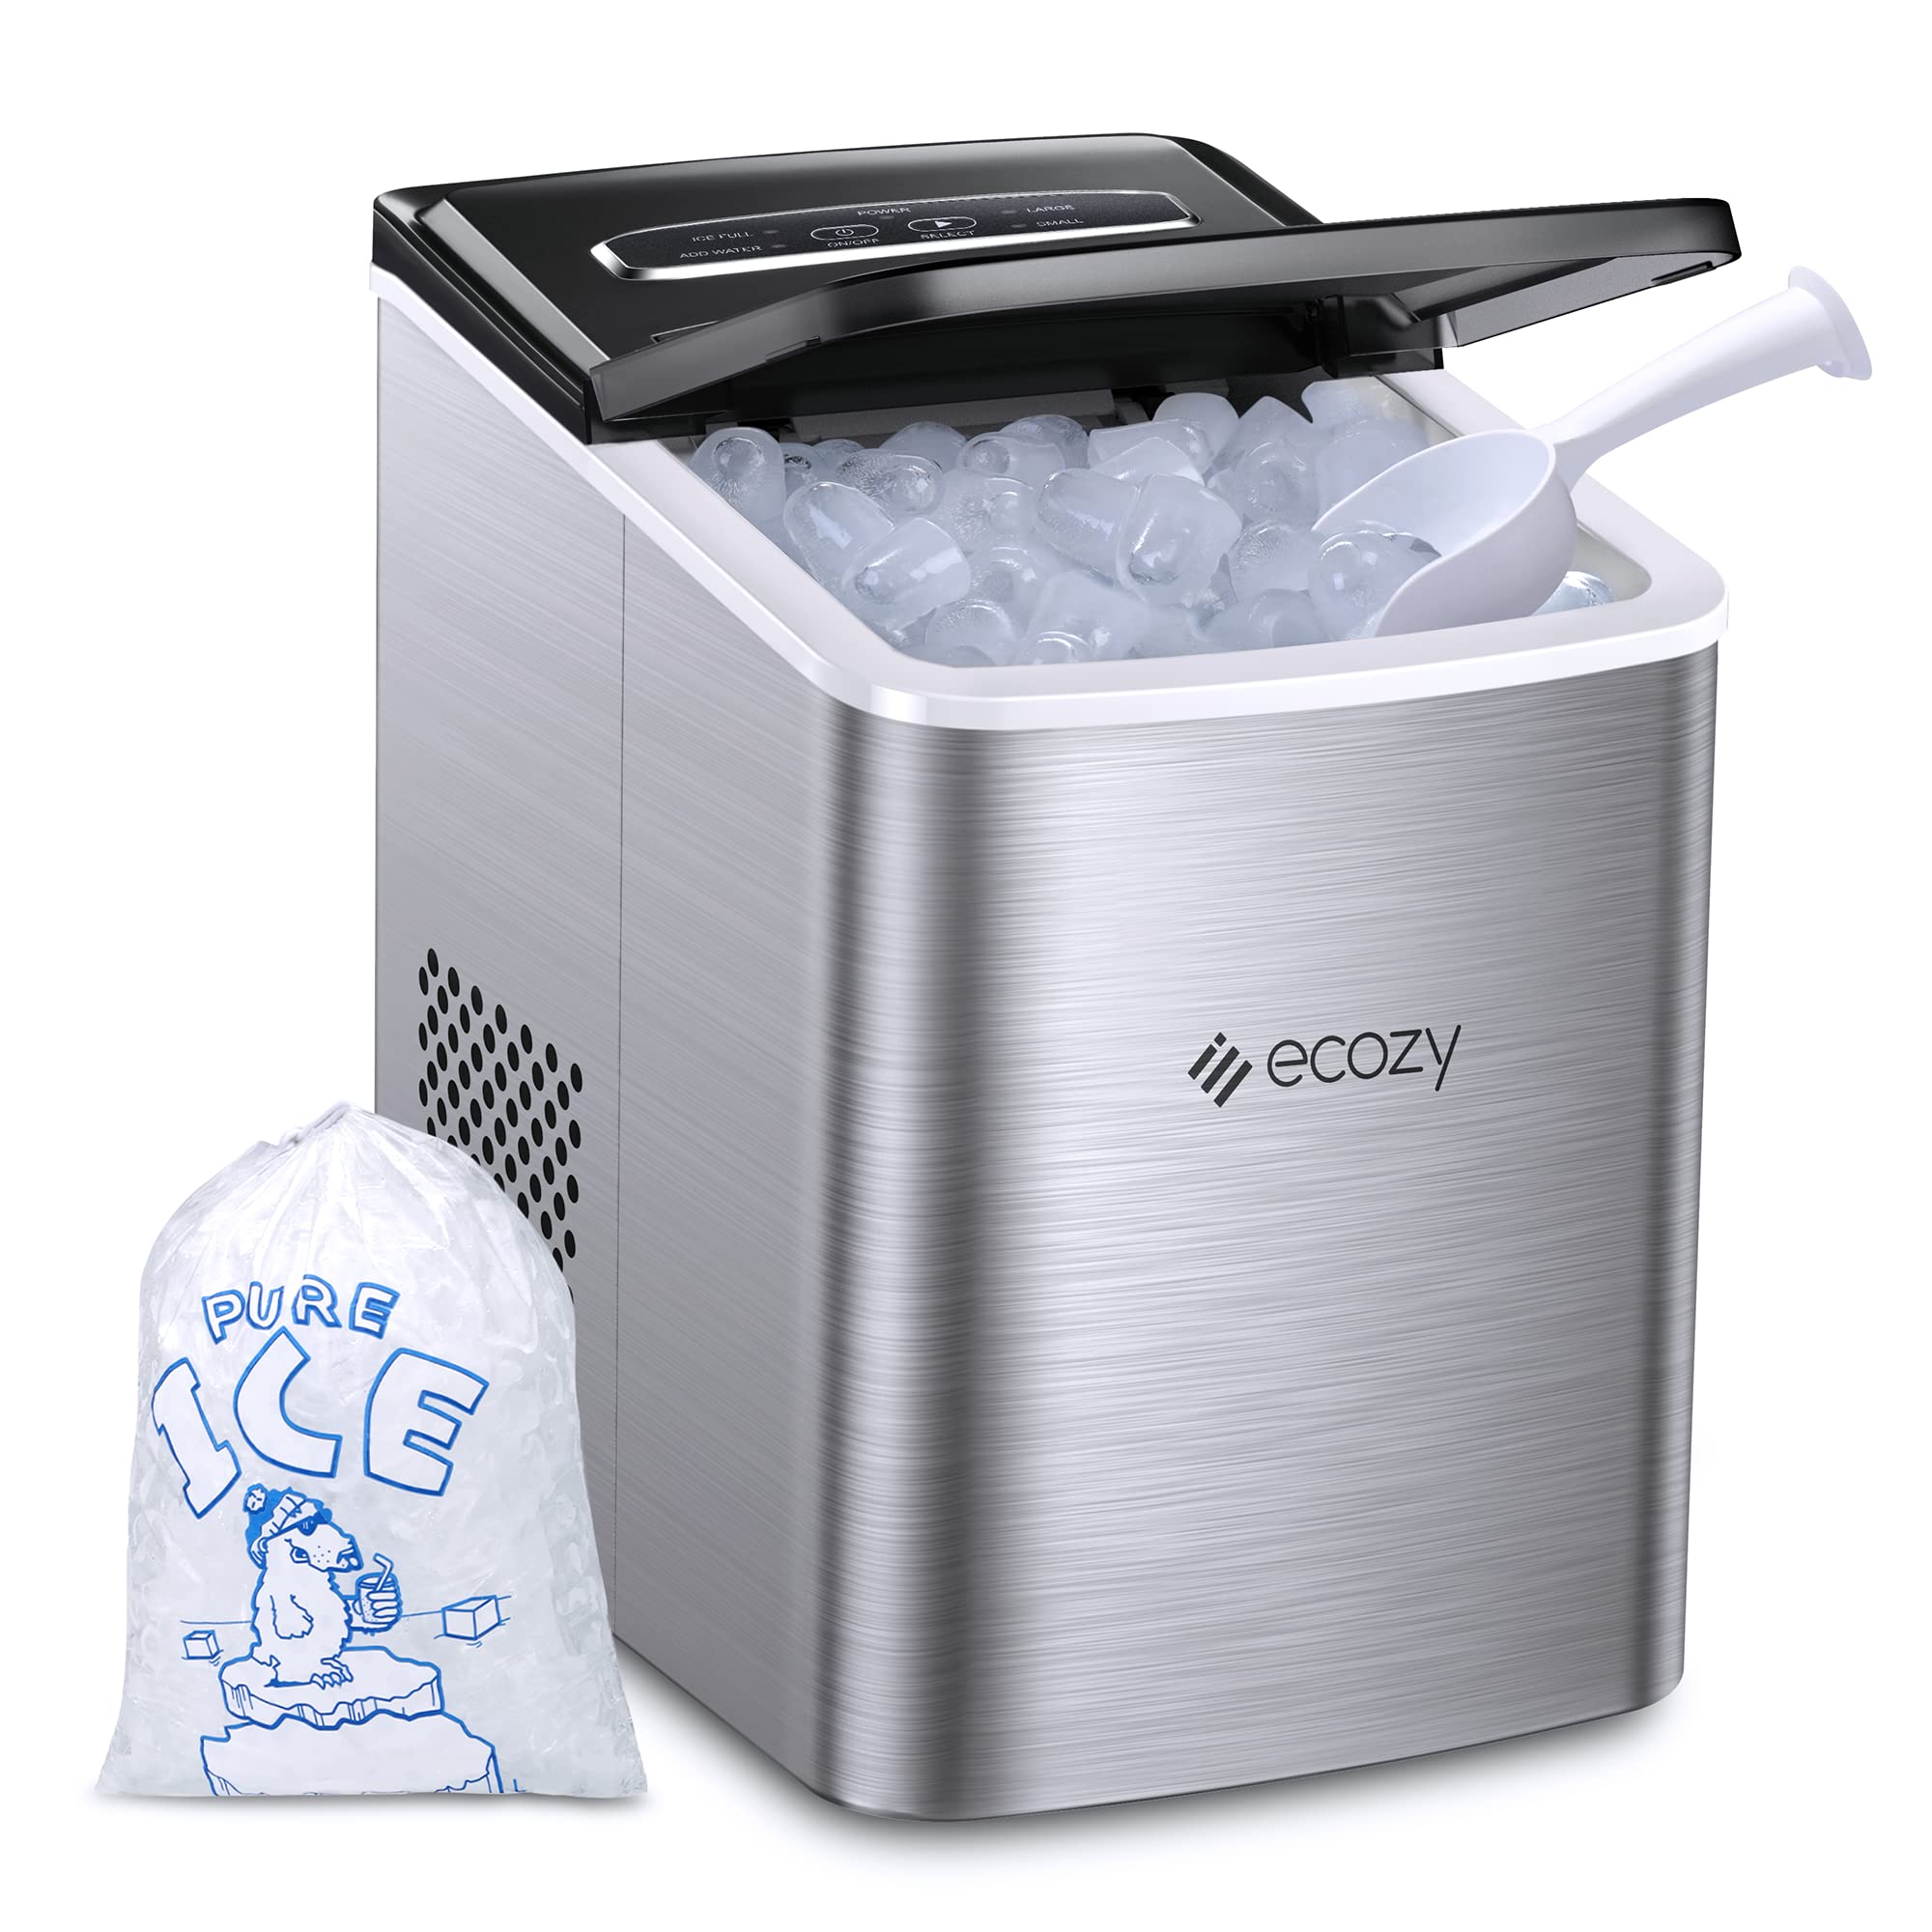 ecozy 便携式制冰机台面，6 分钟内准备好 9 个立方体，24 小时内制冰 26.5 磅，自清洁制冰机，带冰袋/冰勺/冰篮，适用于家庭厨房办公室酒吧派对，银色